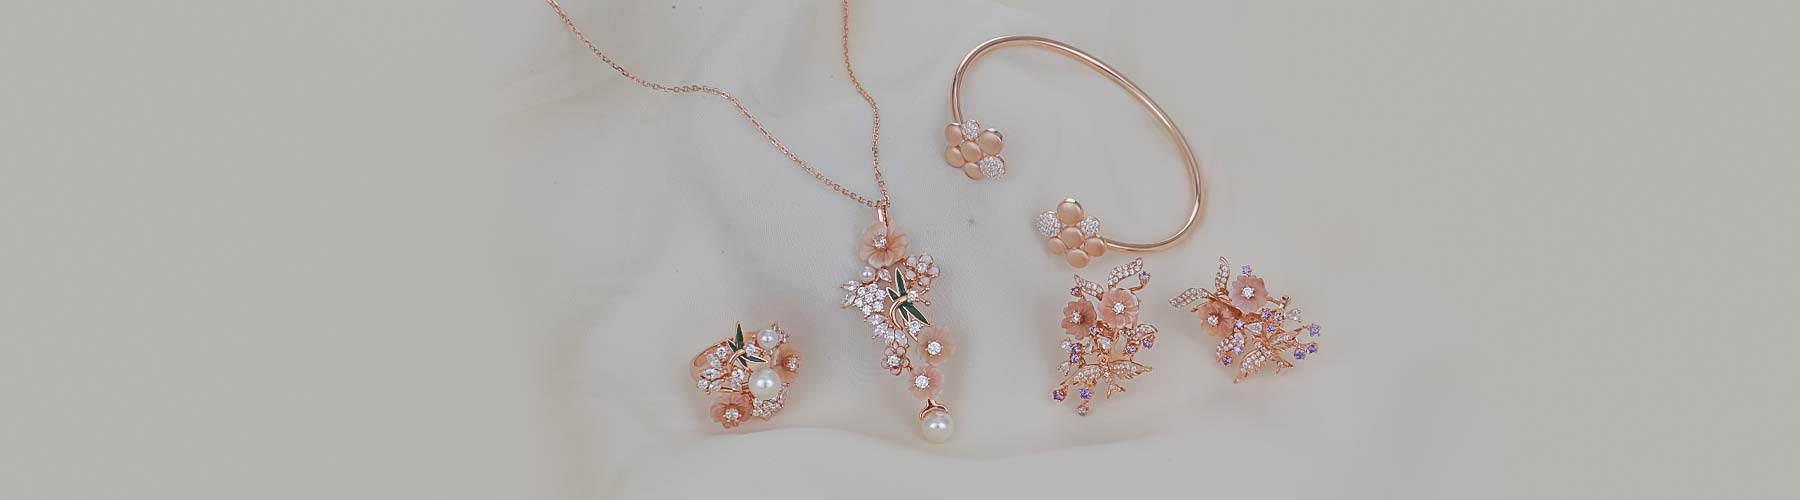 Lovisa Earrings giveaway for free, Women's Fashion, Jewelry